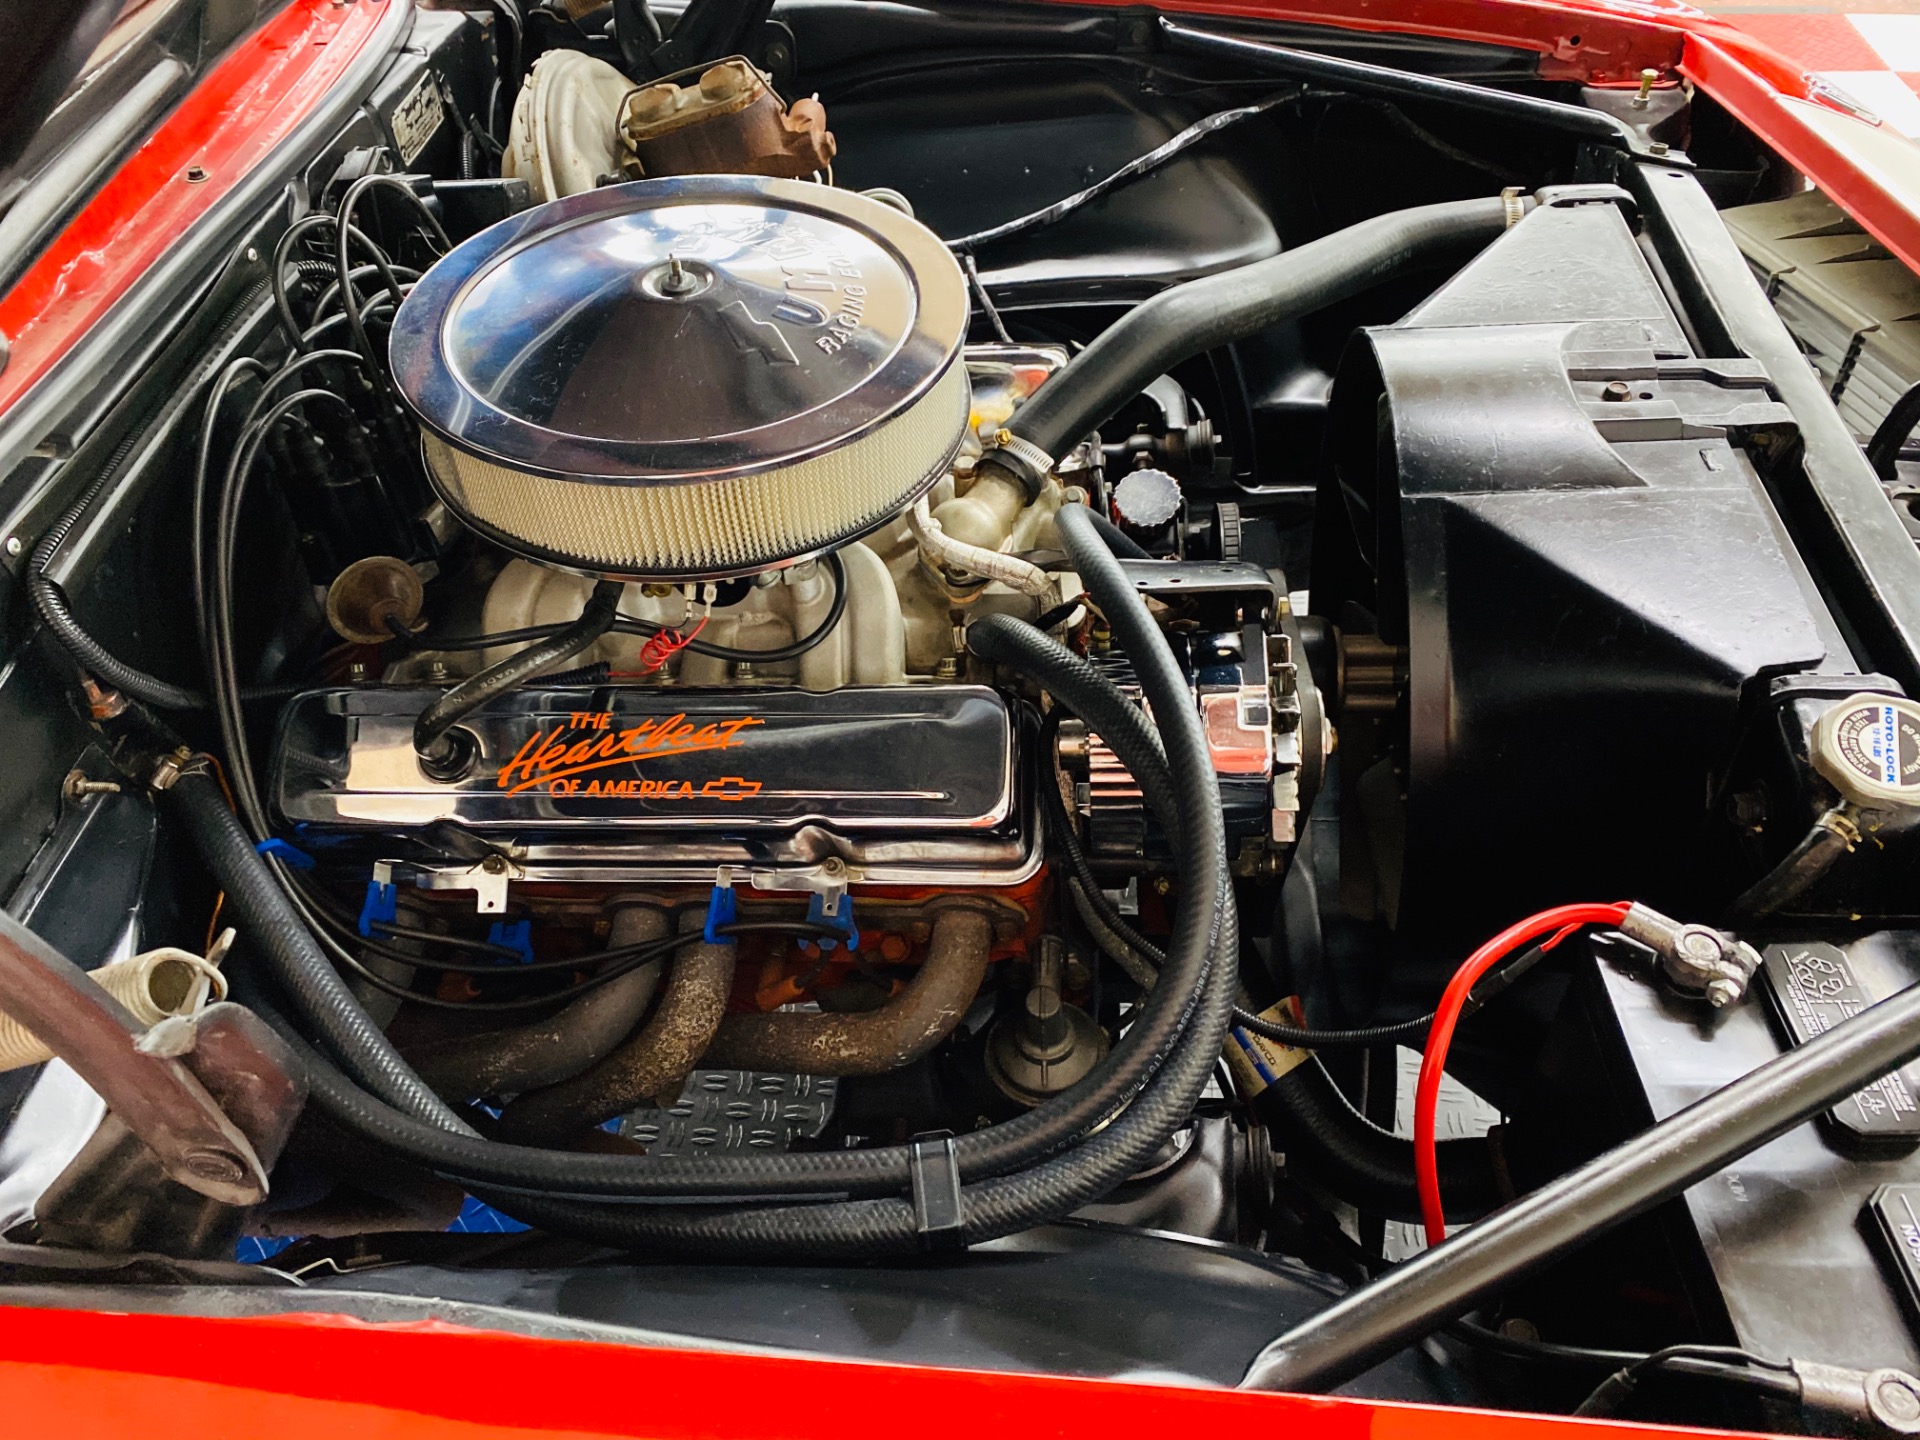 1968 Chevrolet Camaro - 350 ENGINE - 4 SPEED - 12 BOLT ...